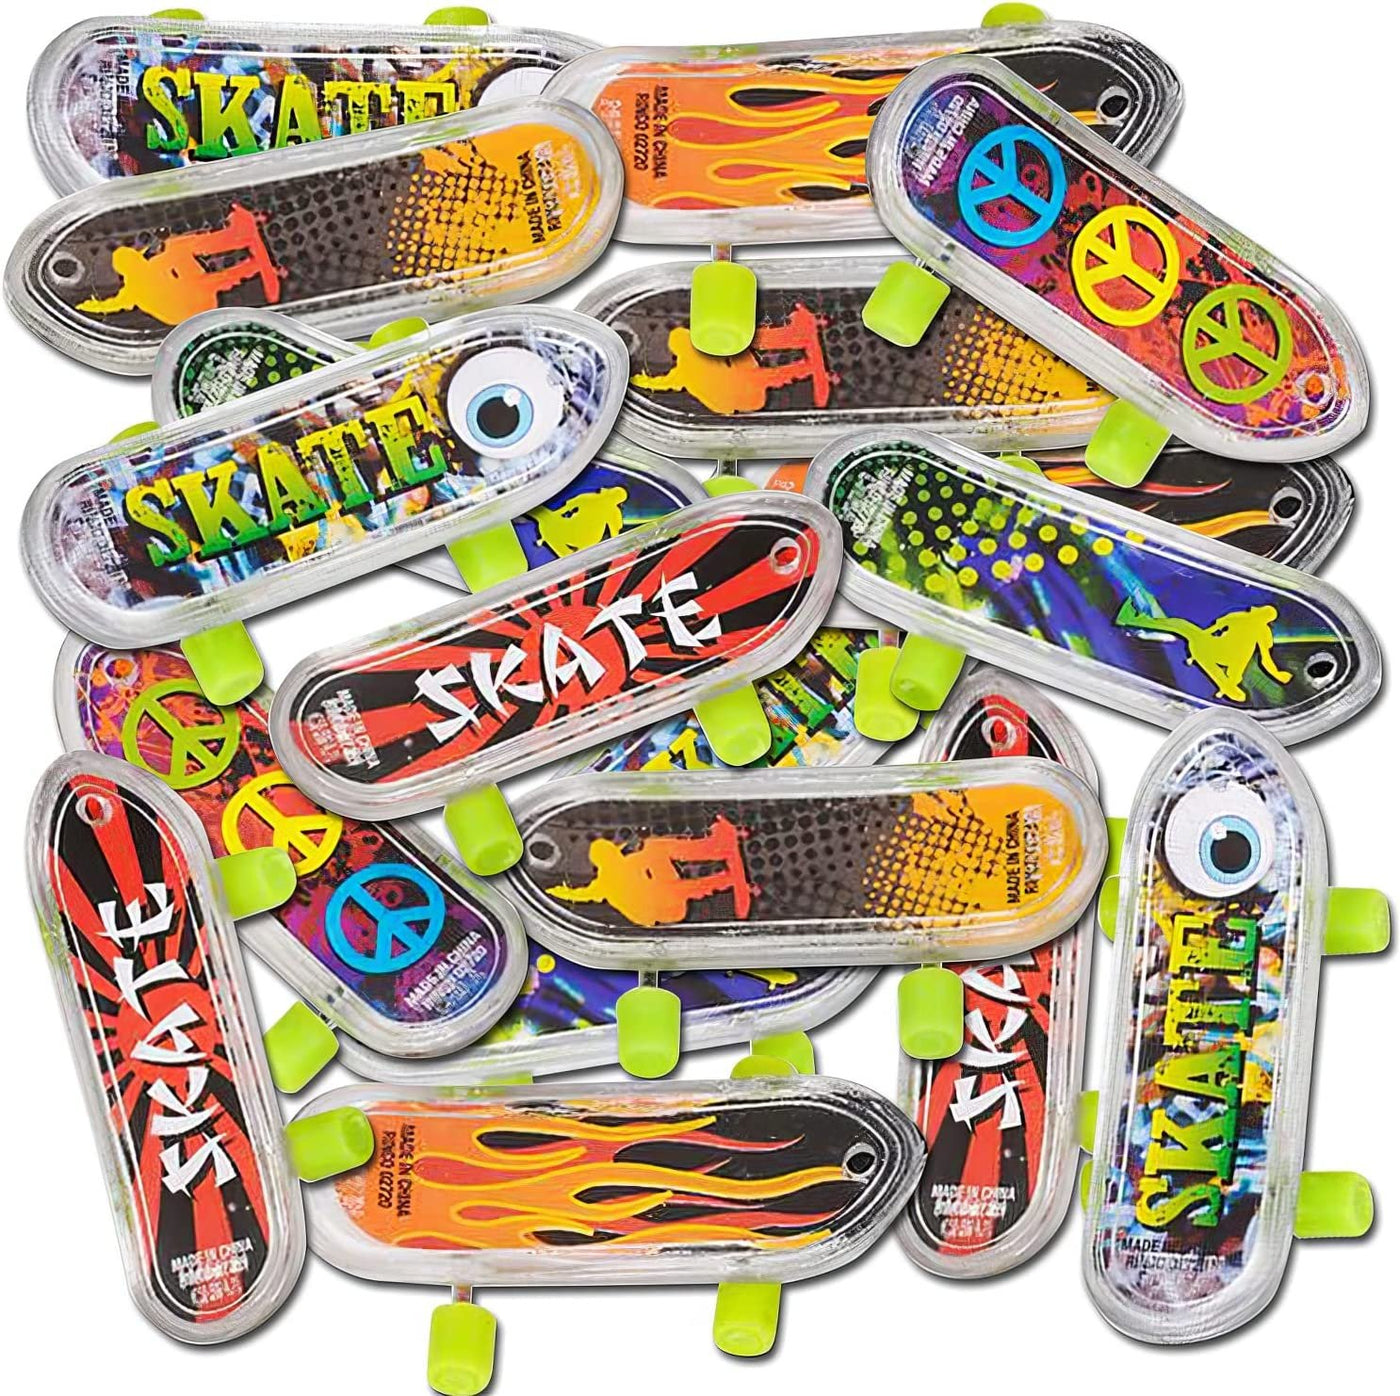 Mini Pack Finger Skateboards Cool Toys Kit Deck Skateboards Toy Gift Kids